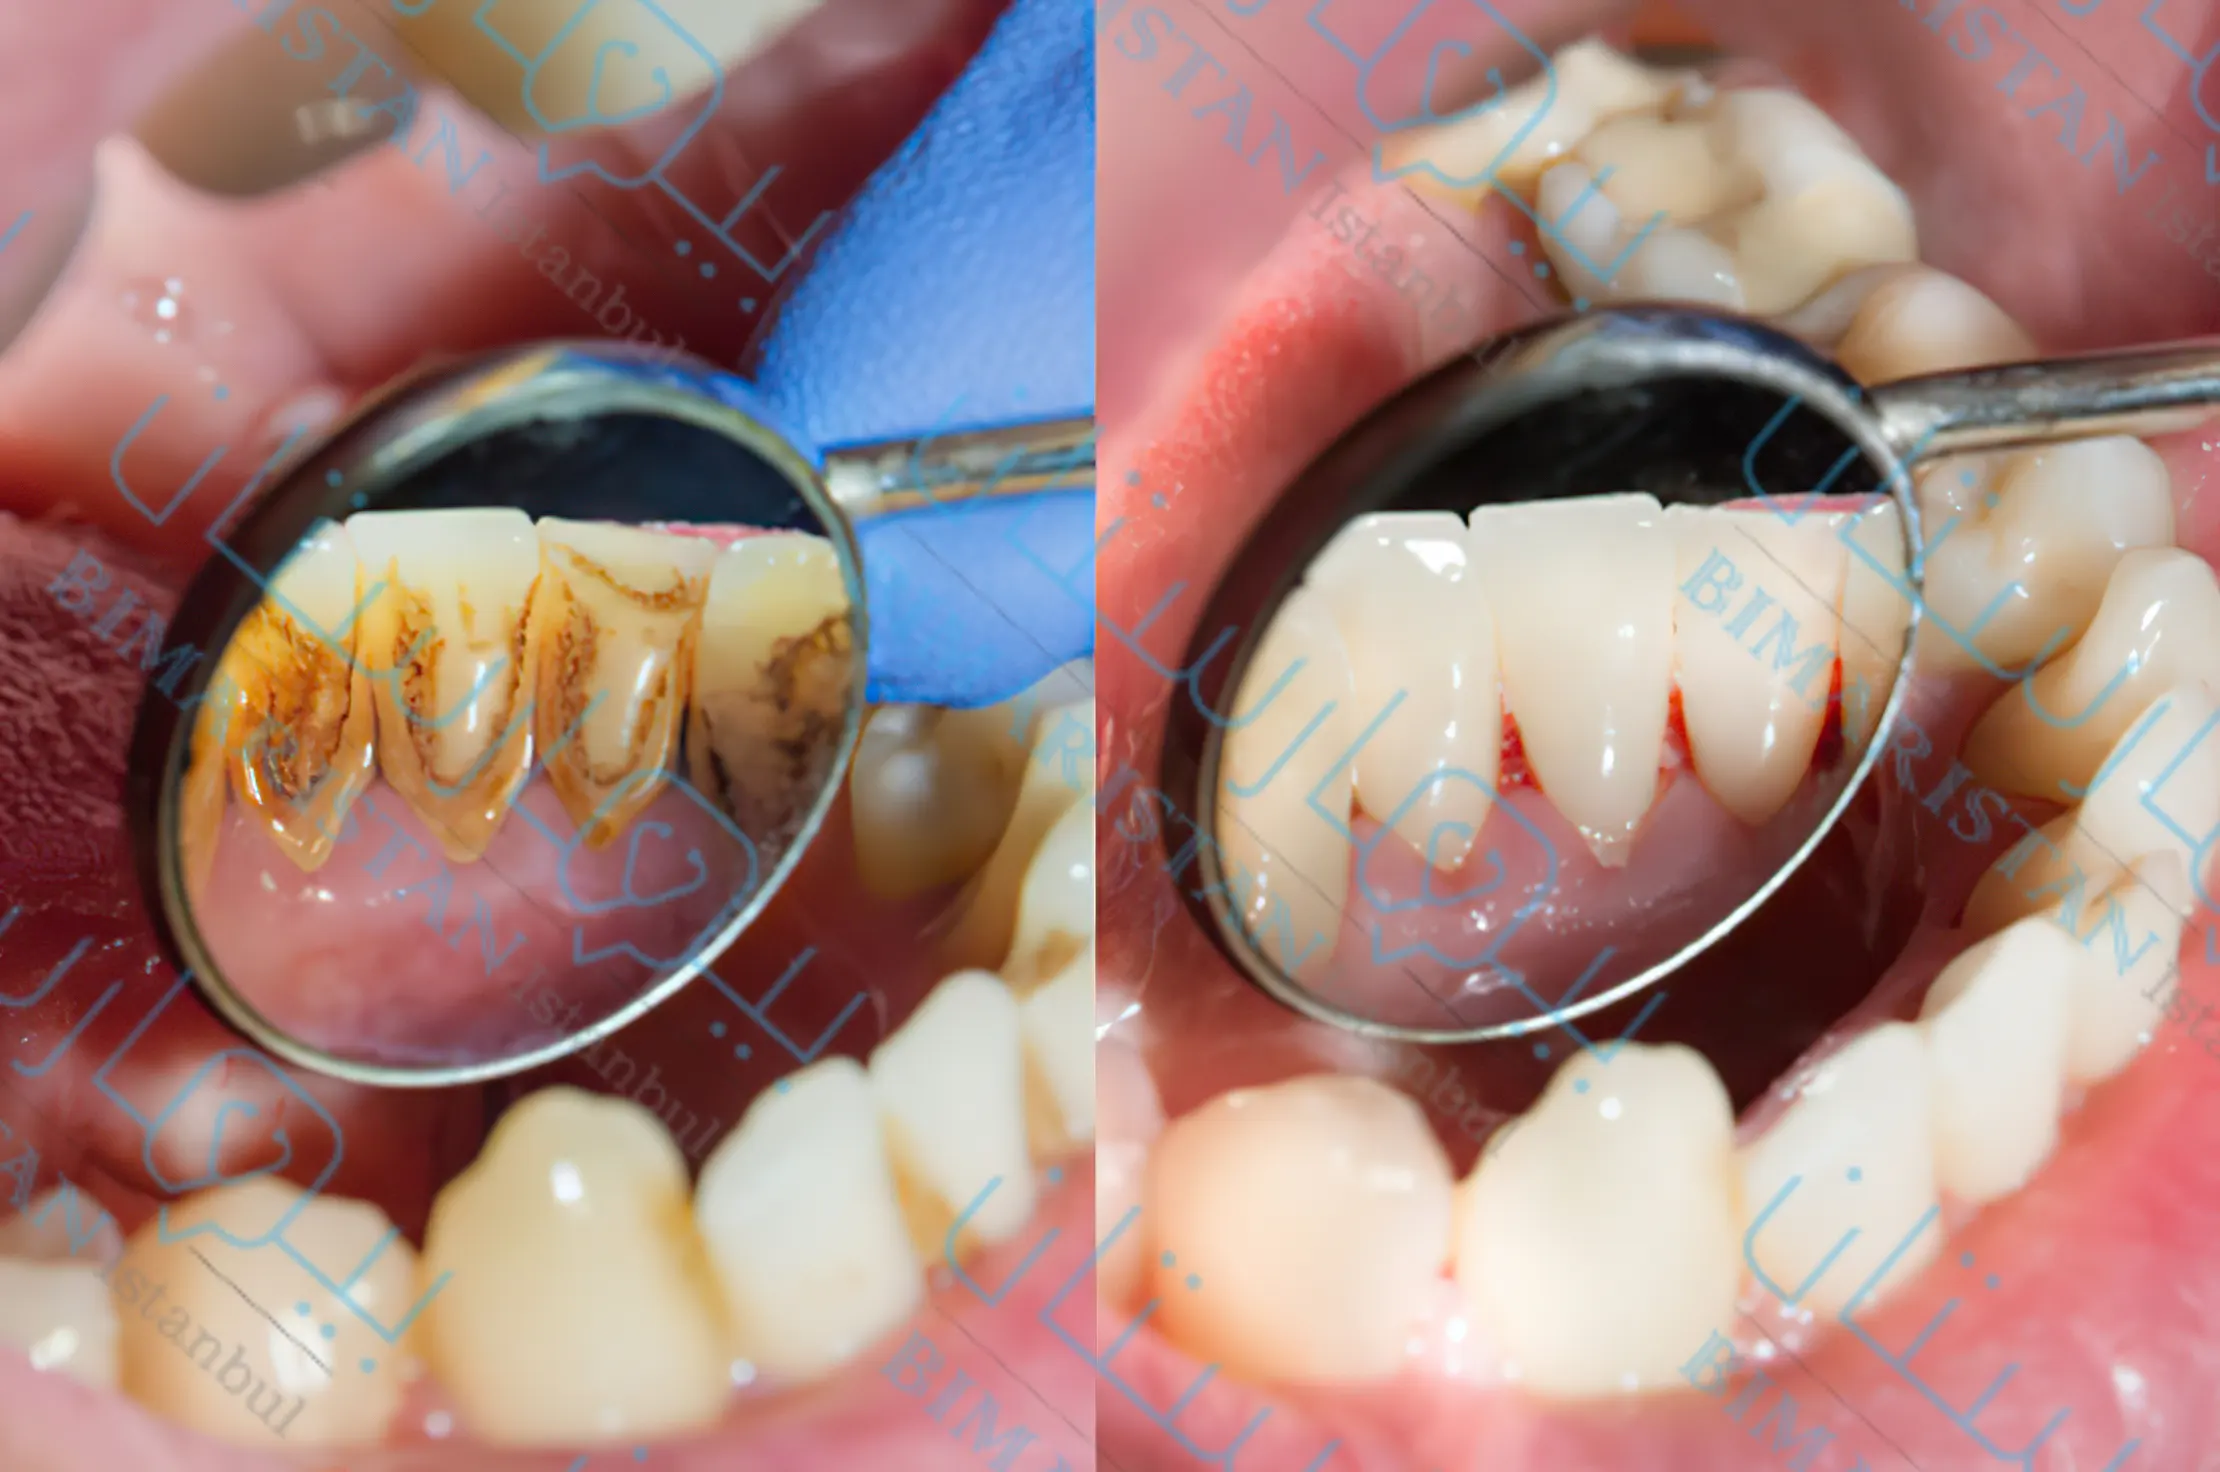 Soldaki resim dişlerin boyunlarındaki tartar birikintilerini, sağdaki resim ise diş taşı temizlendikten ve çıkarıldıktan sonra dişleri göstermektedir.